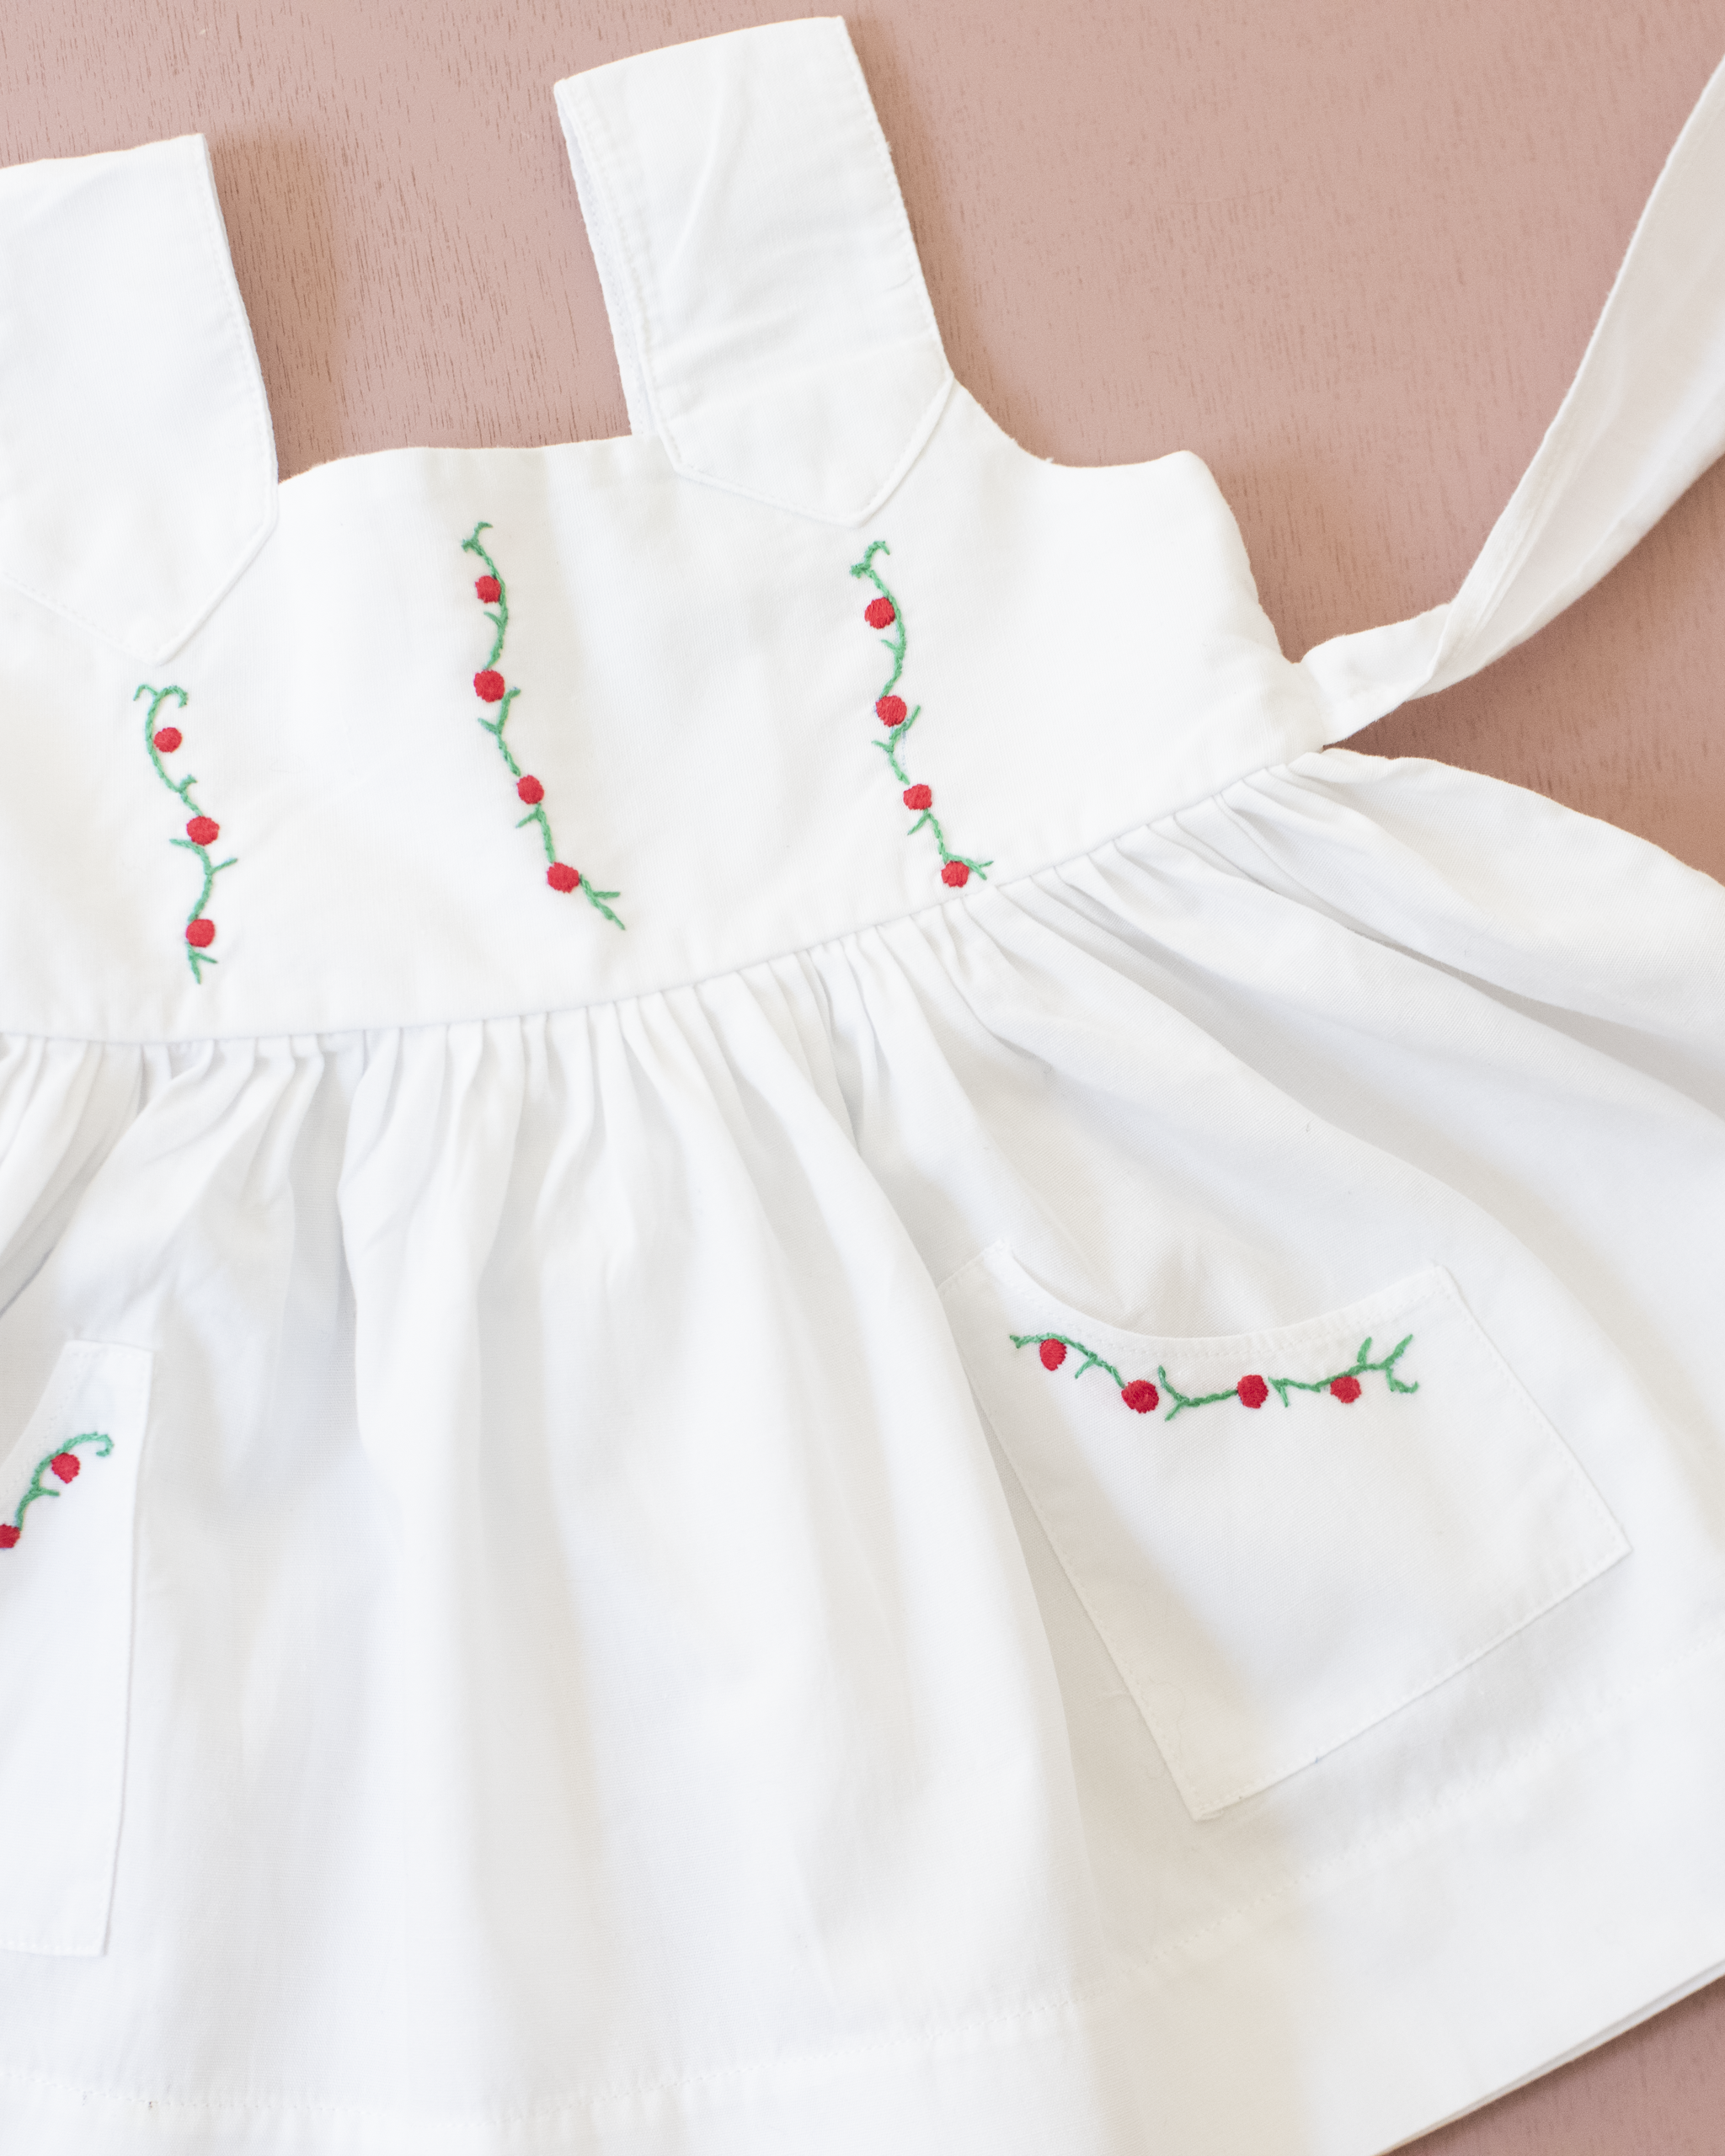 שמלה לבנה עם רקמות פרחים | 3-6 חודשים